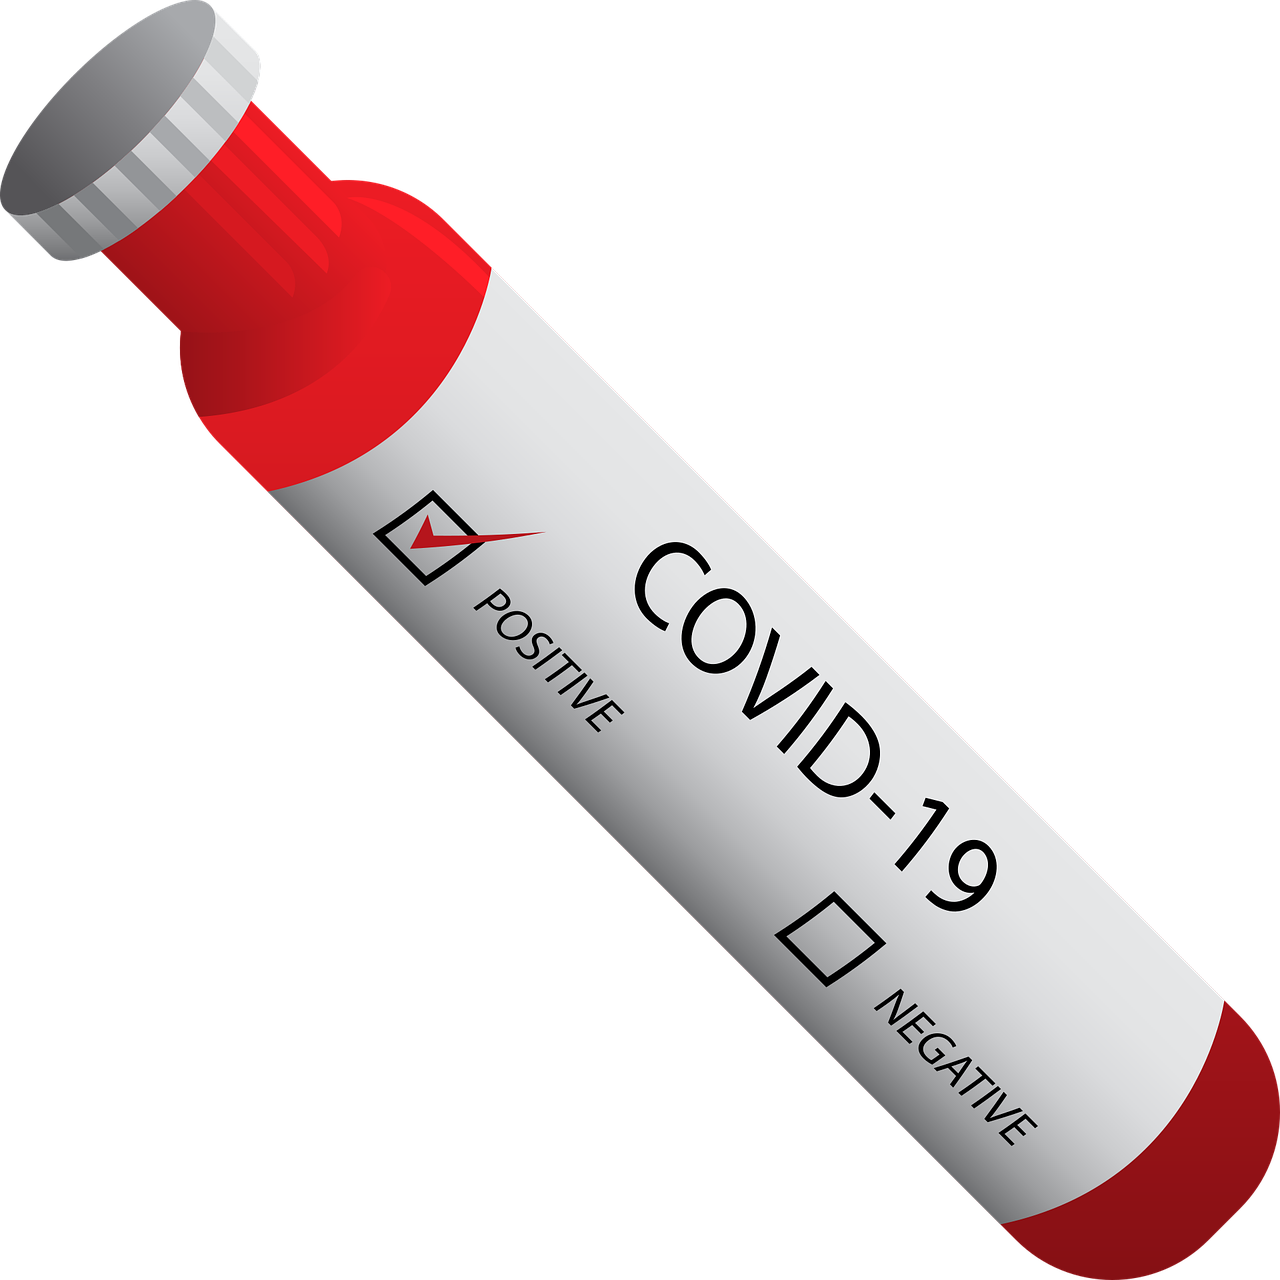 ไวรัสโคโรน่าสายพันธุ์ใหม่ โควิด-19 เป็นบวก